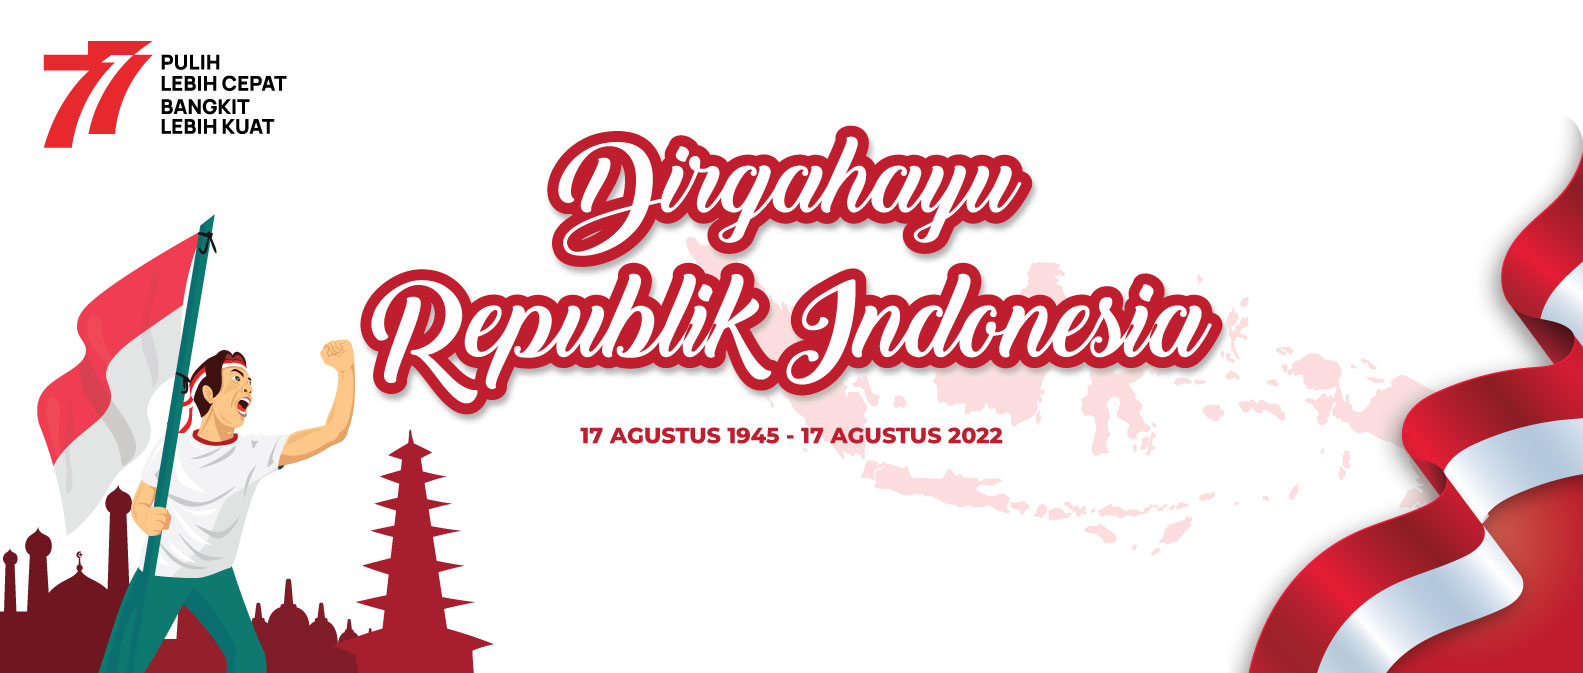 Jujung| Dirgahayu Republic Indonesia ke-77